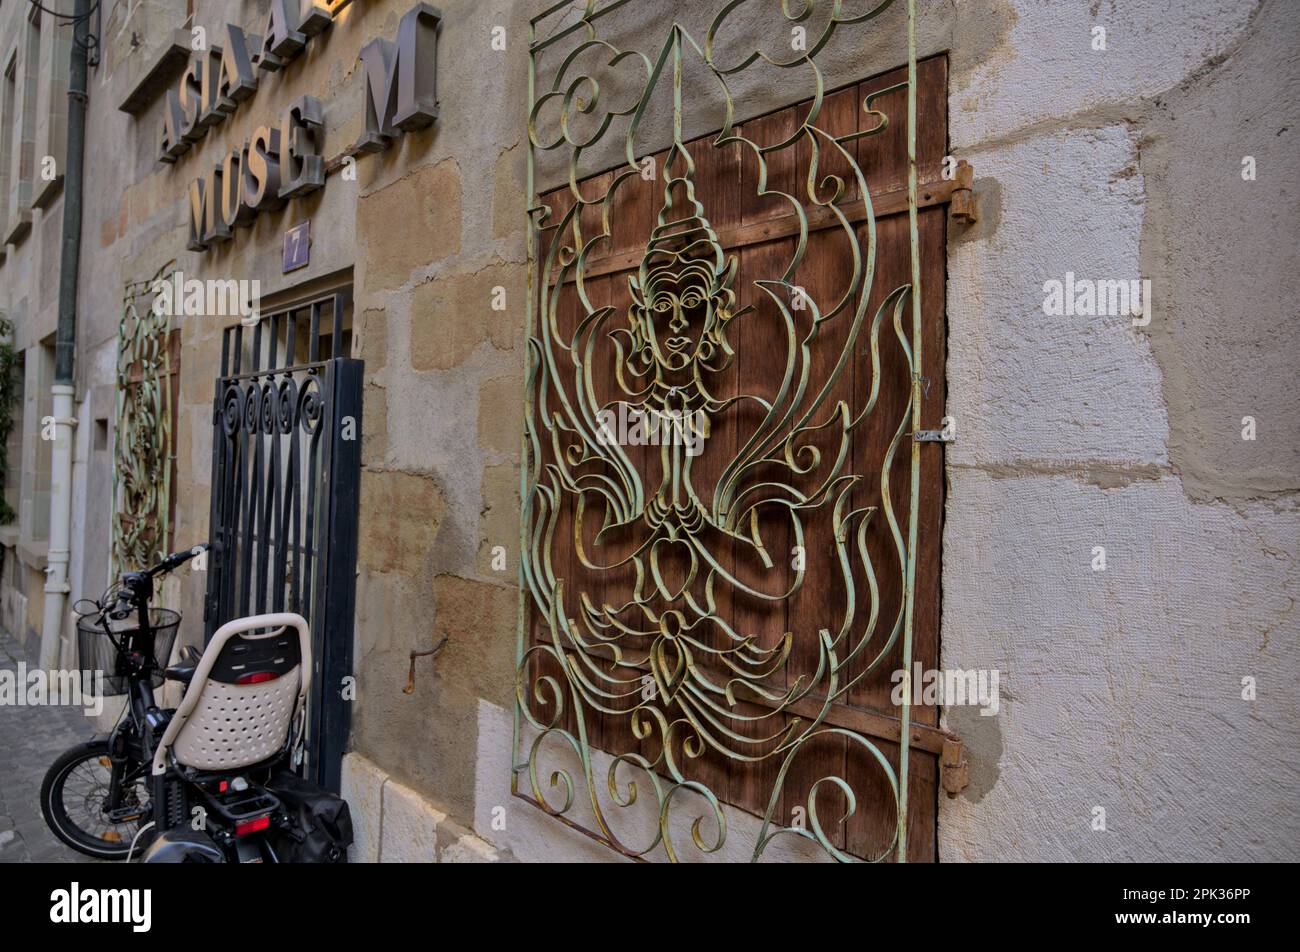 Ein alter verwitterter kunstvoll verzierter Fensterschutz aus Metall in einem verlassenen Museum afrikanischer und asiatischer Kultur in der Altstadt von Genf Stockfoto